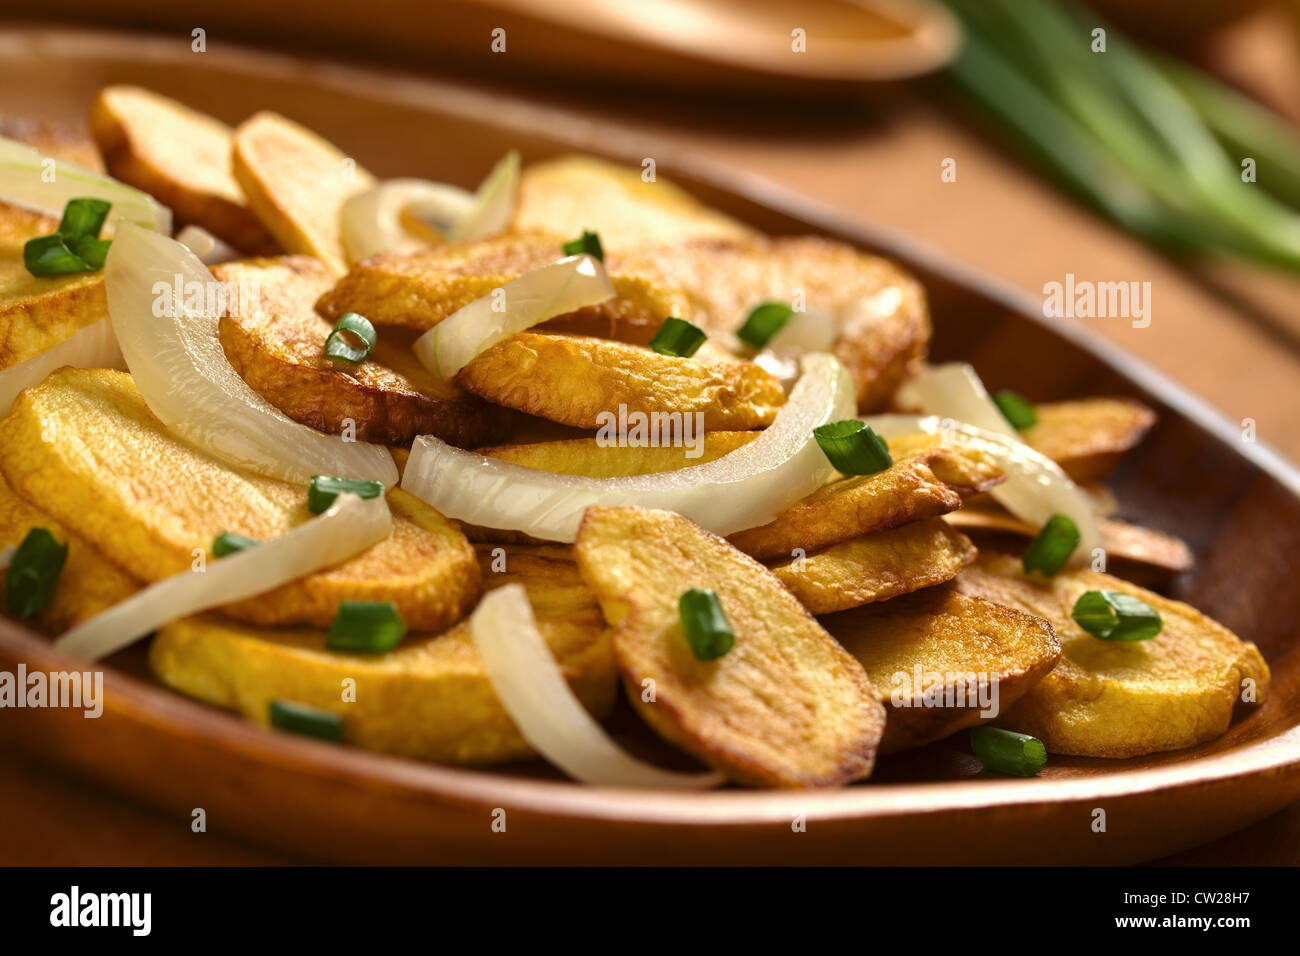 Frische hausgemachte knusprig gebratene Kartoffel-Scheiben mit gebratenen Zwiebeln und Lauch auf Holzplatte Stockfoto